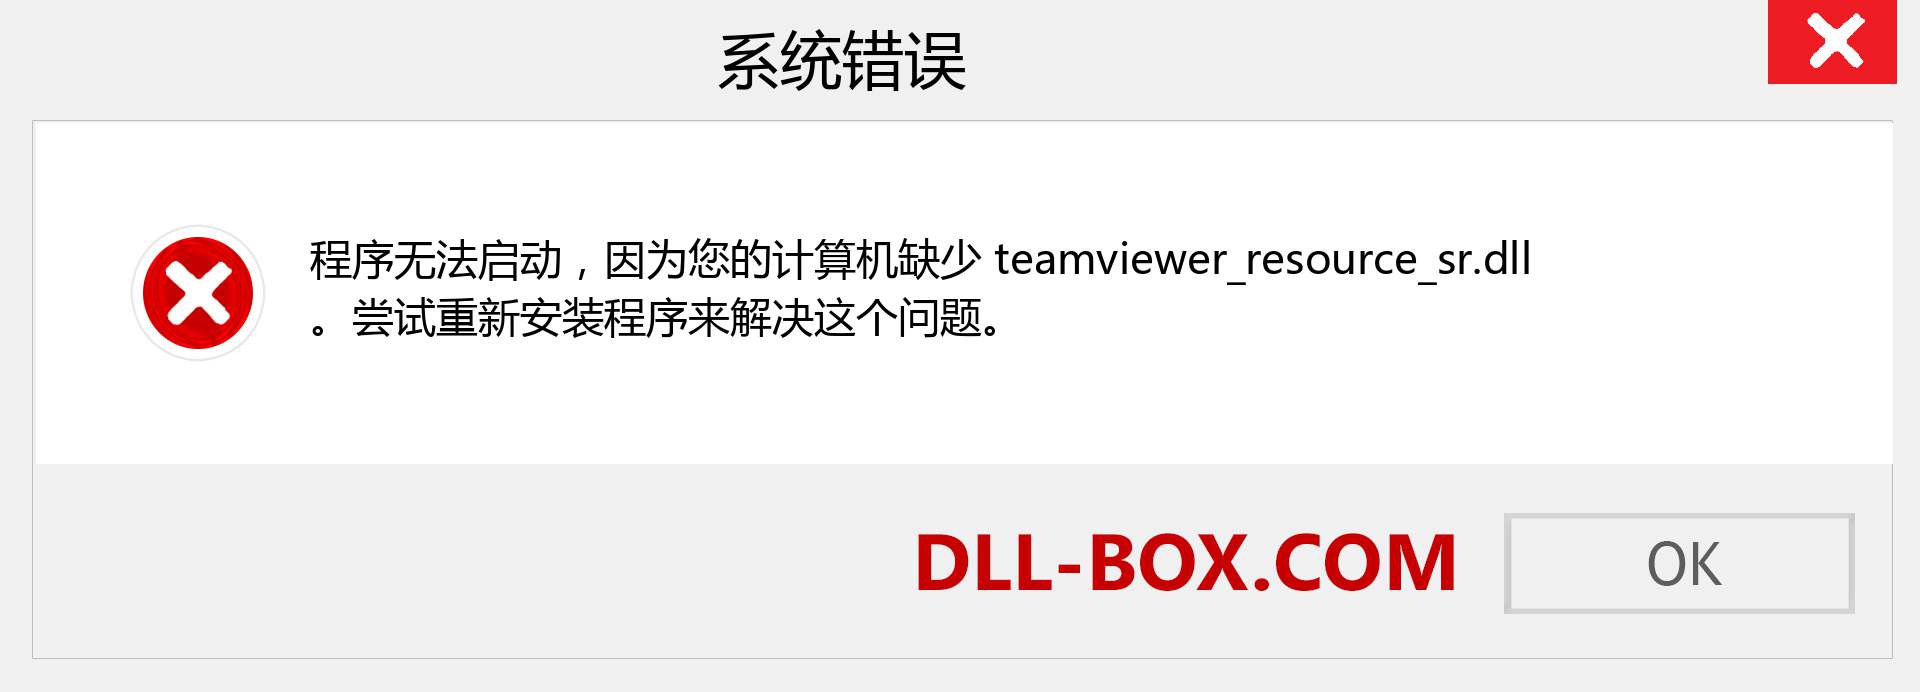 teamviewer_resource_sr.dll 文件丢失？。 适用于 Windows 7、8、10 的下载 - 修复 Windows、照片、图像上的 teamviewer_resource_sr dll 丢失错误